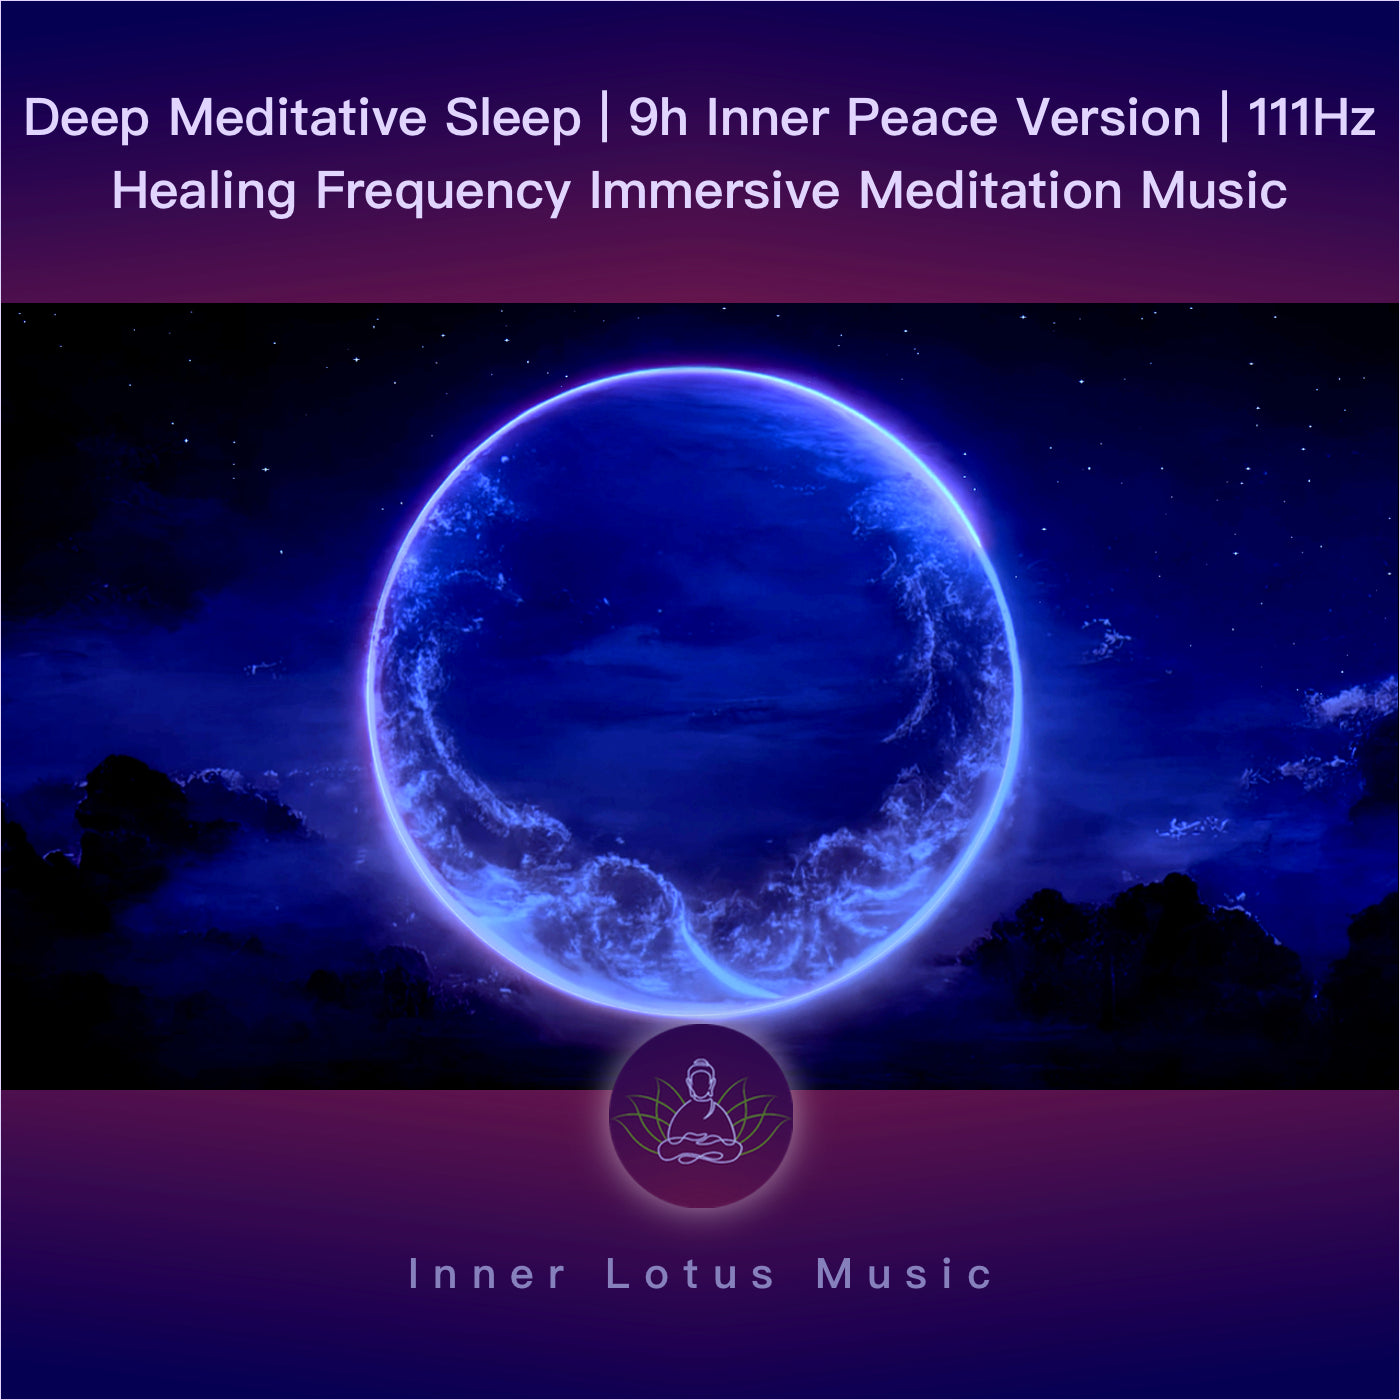 Sueño Meditativo Profundo | 9h Paz Interior | Música Inmersiva Frecuencia Curativa 111 Hz Meditación